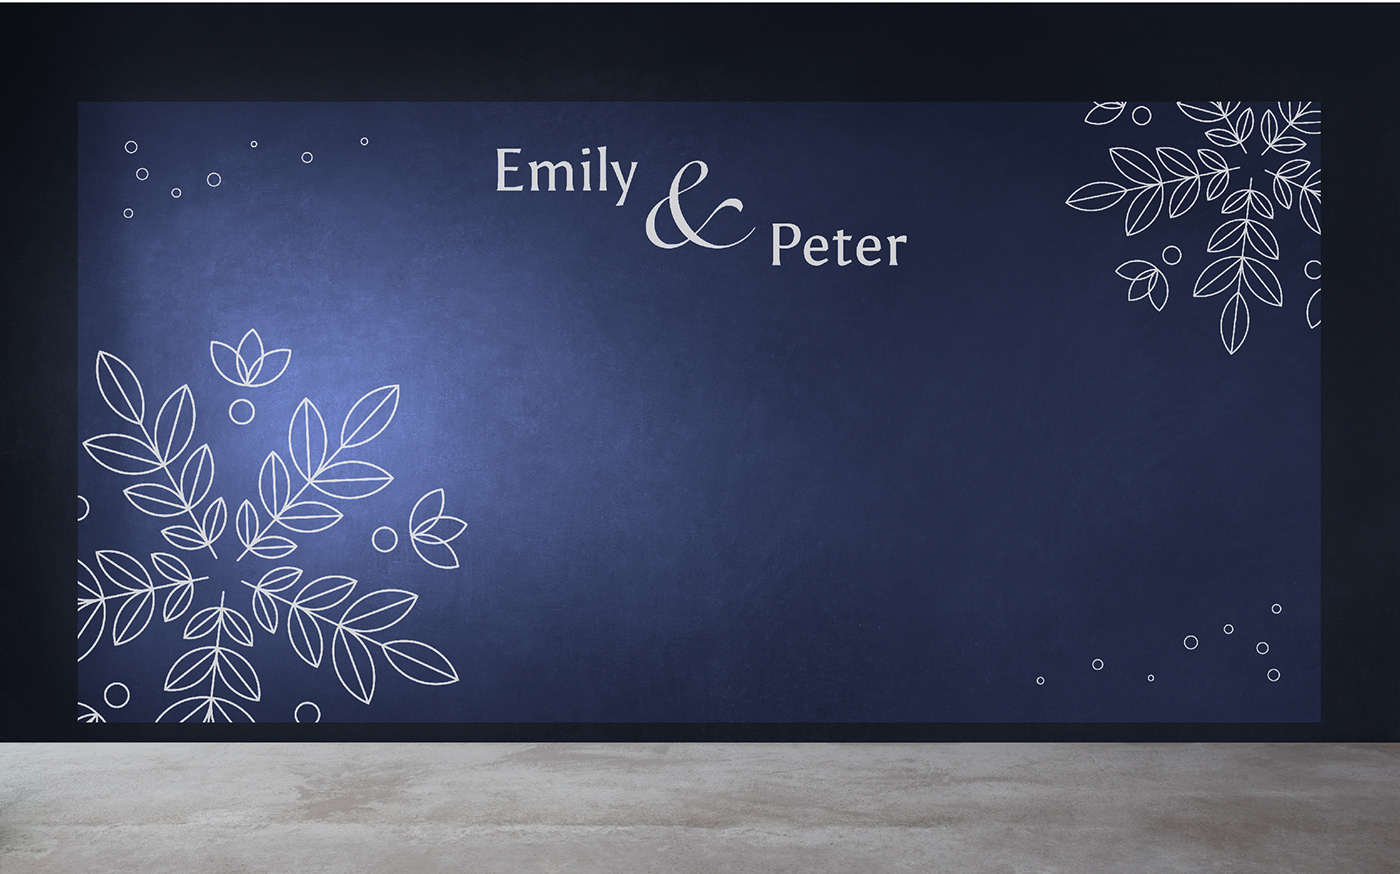 düğün DÜĞÜN Davetiyesi Event Event Design grafik tasarım graphic design  Identity Design logo wedding wedding invitation